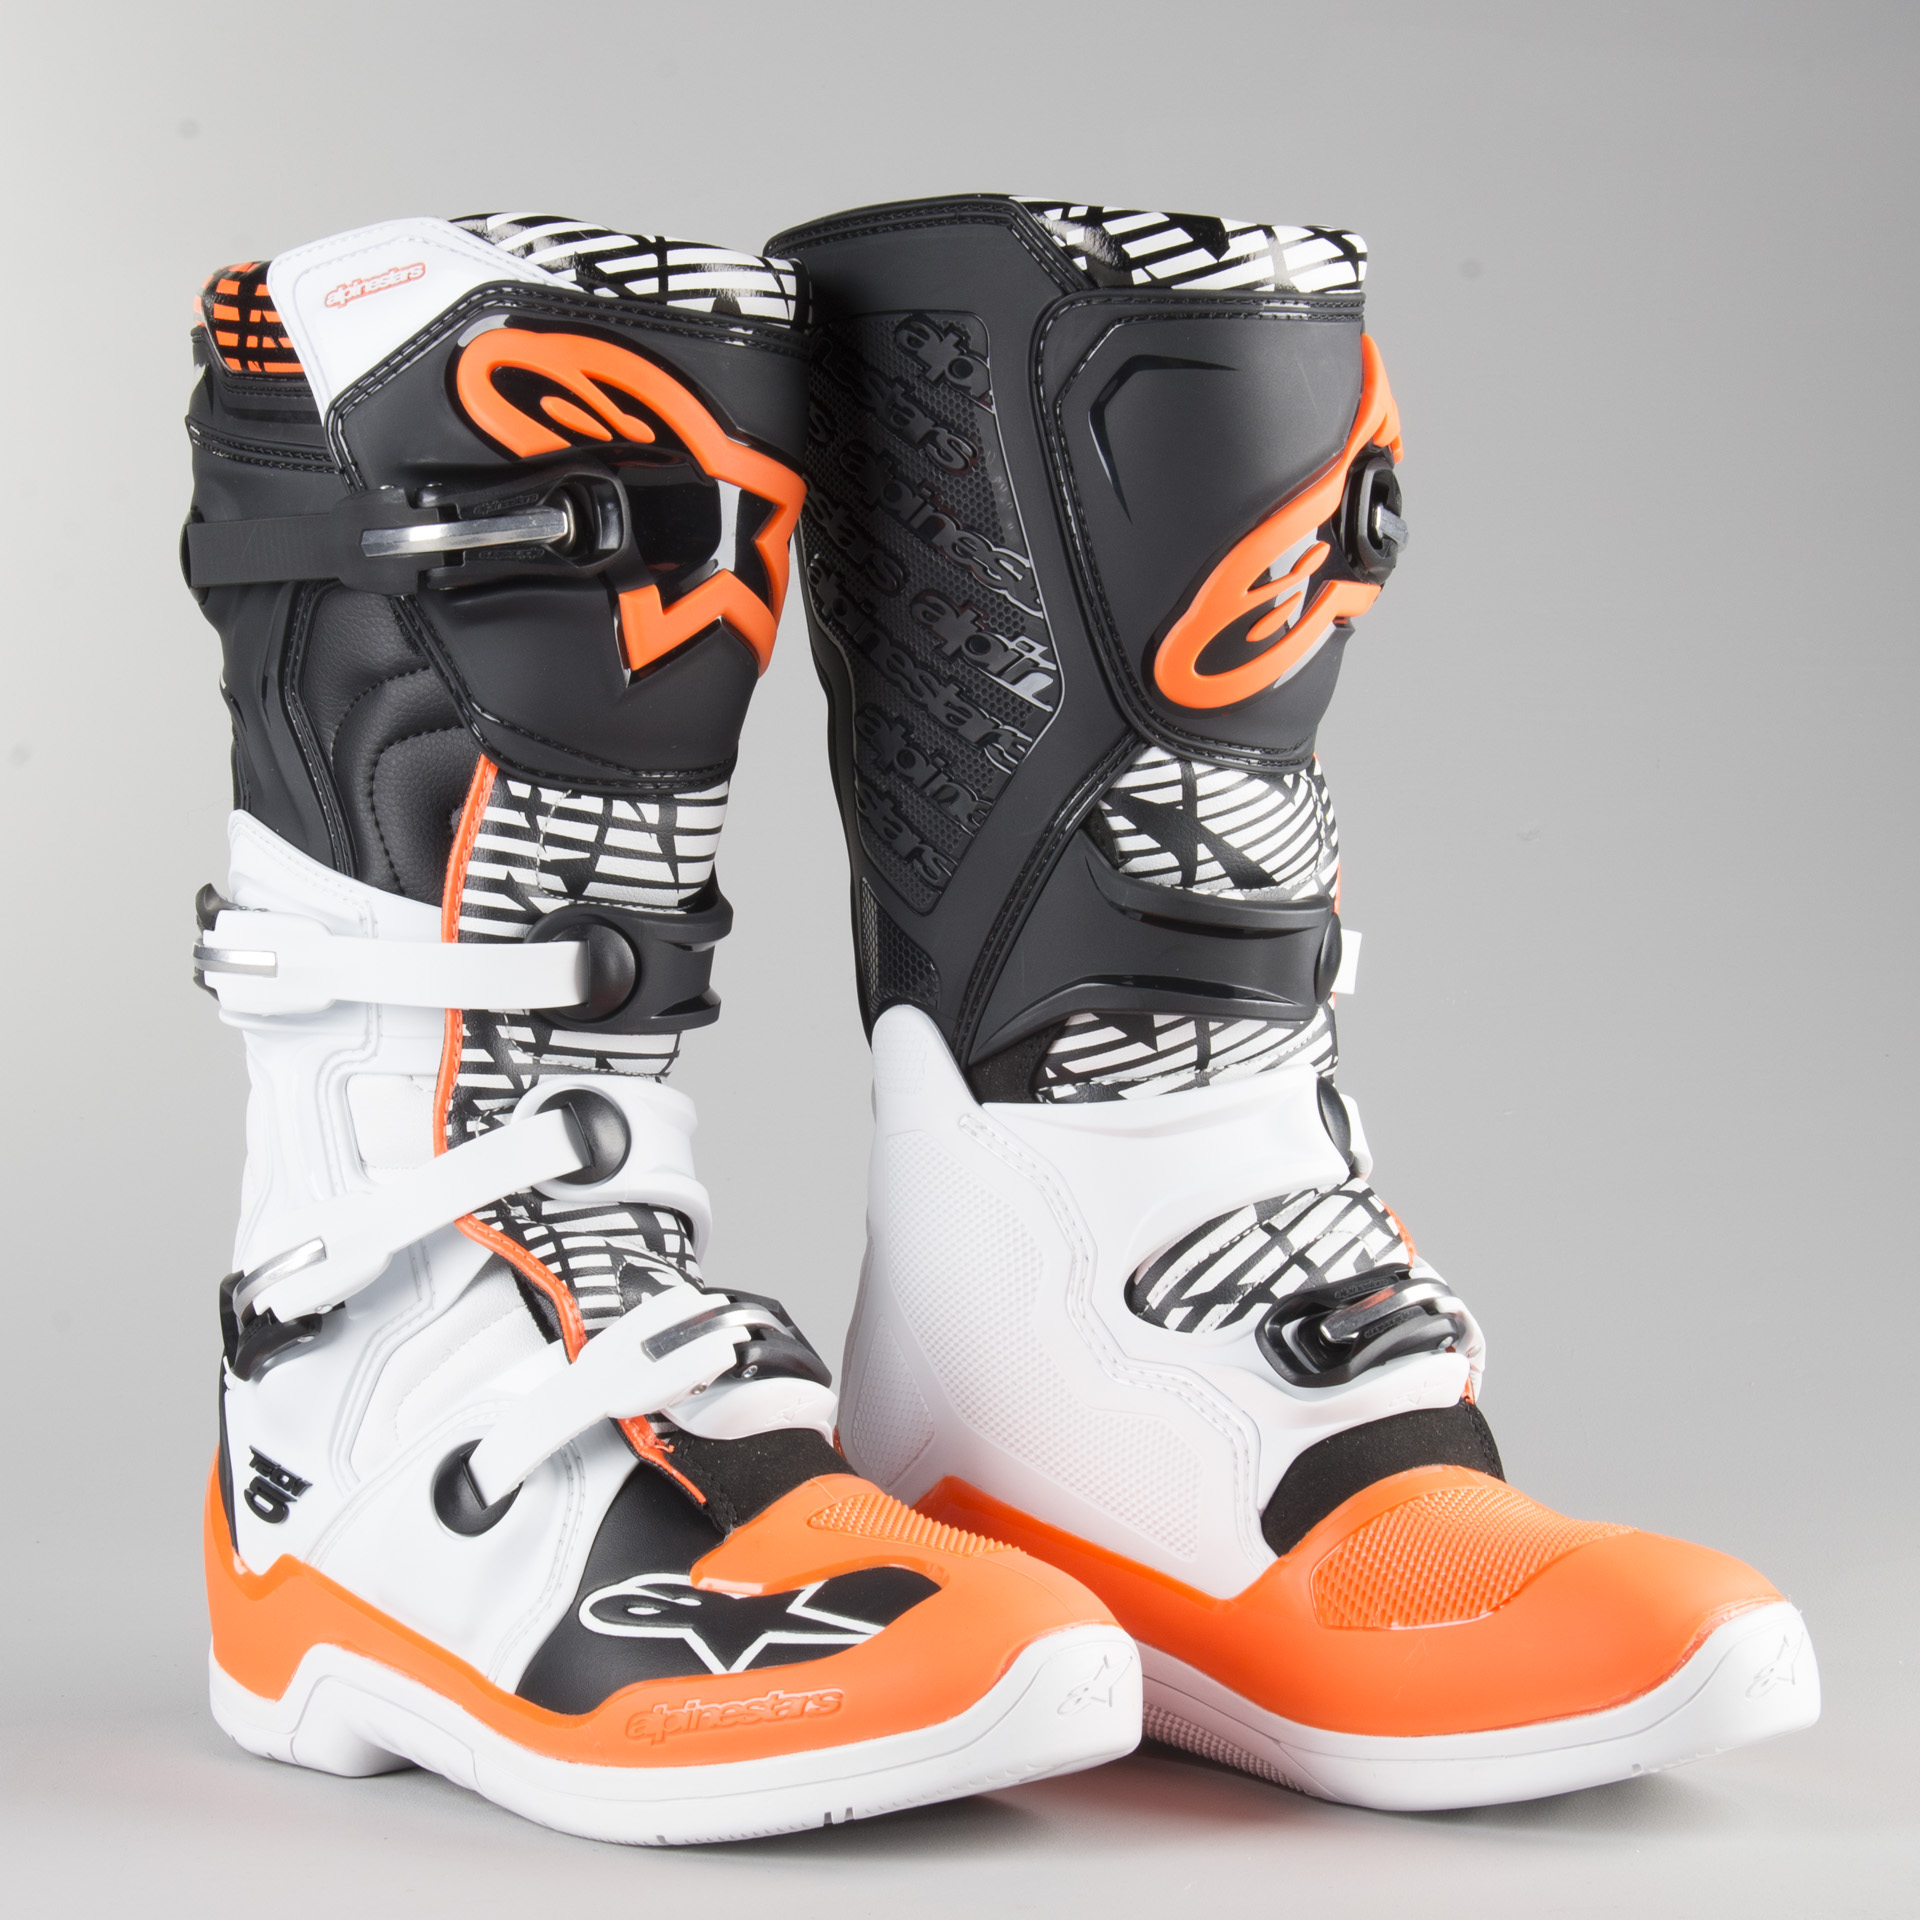 Alpine Tech 5 Boots Clearance, 60% OFF | sportsregras.com